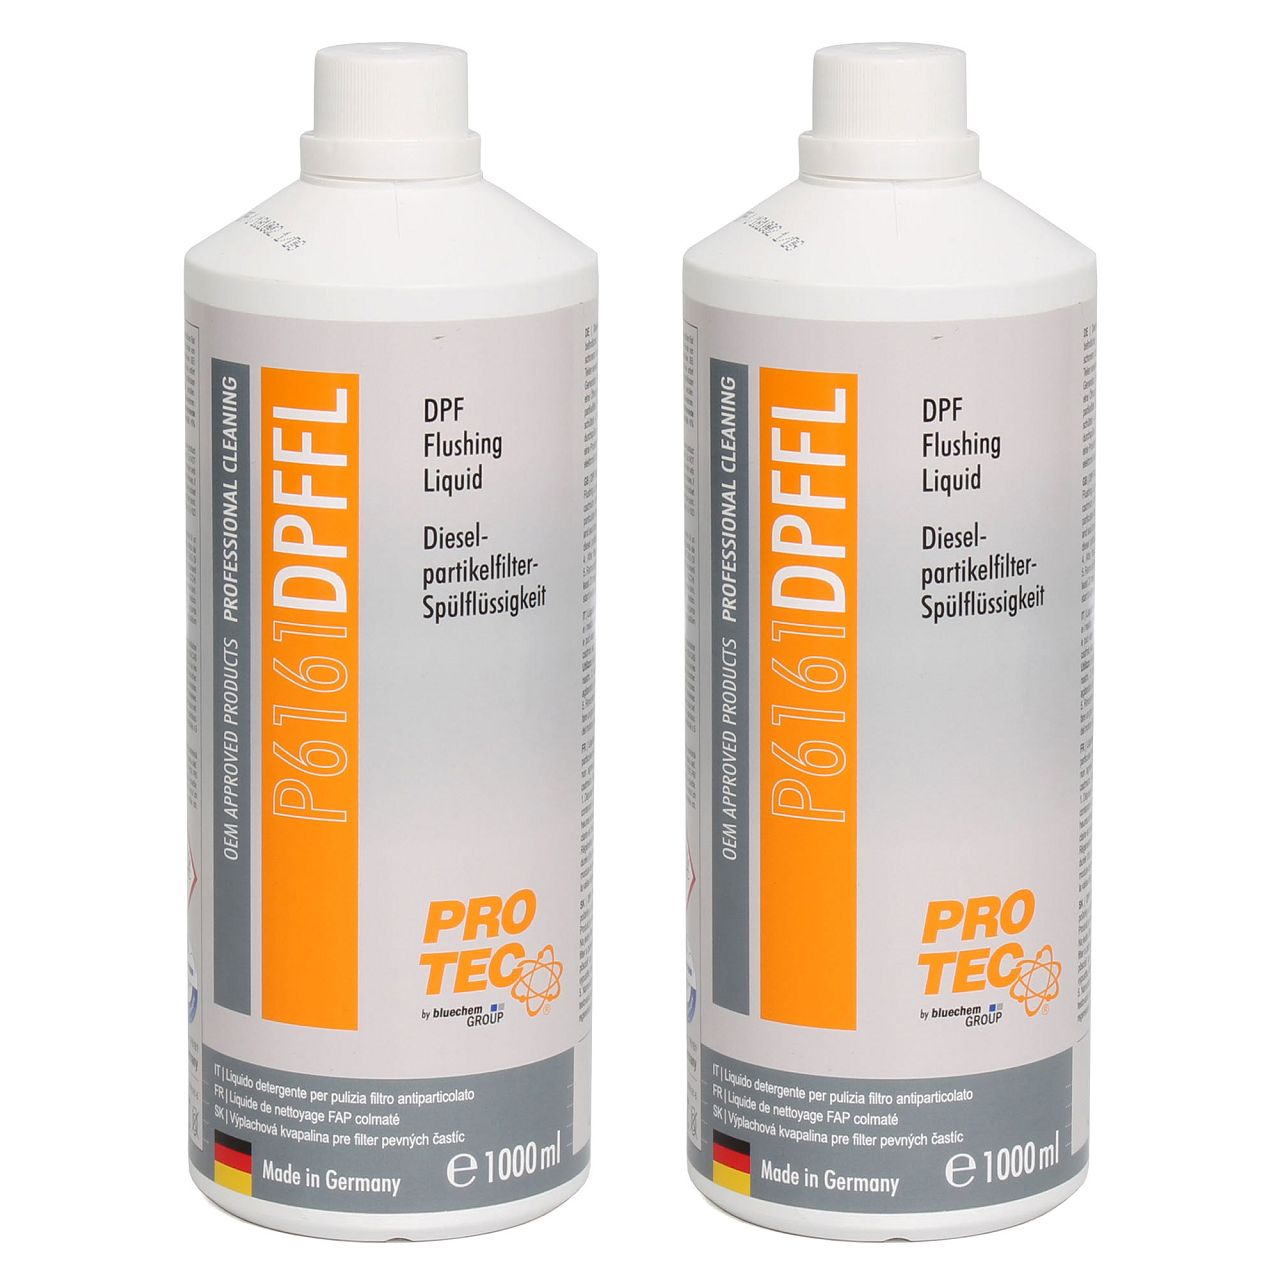 2 Liter PROTEC DPF Flushing Liquid Dieselpartikelfilter-Spülflüssigkeit Reiniger